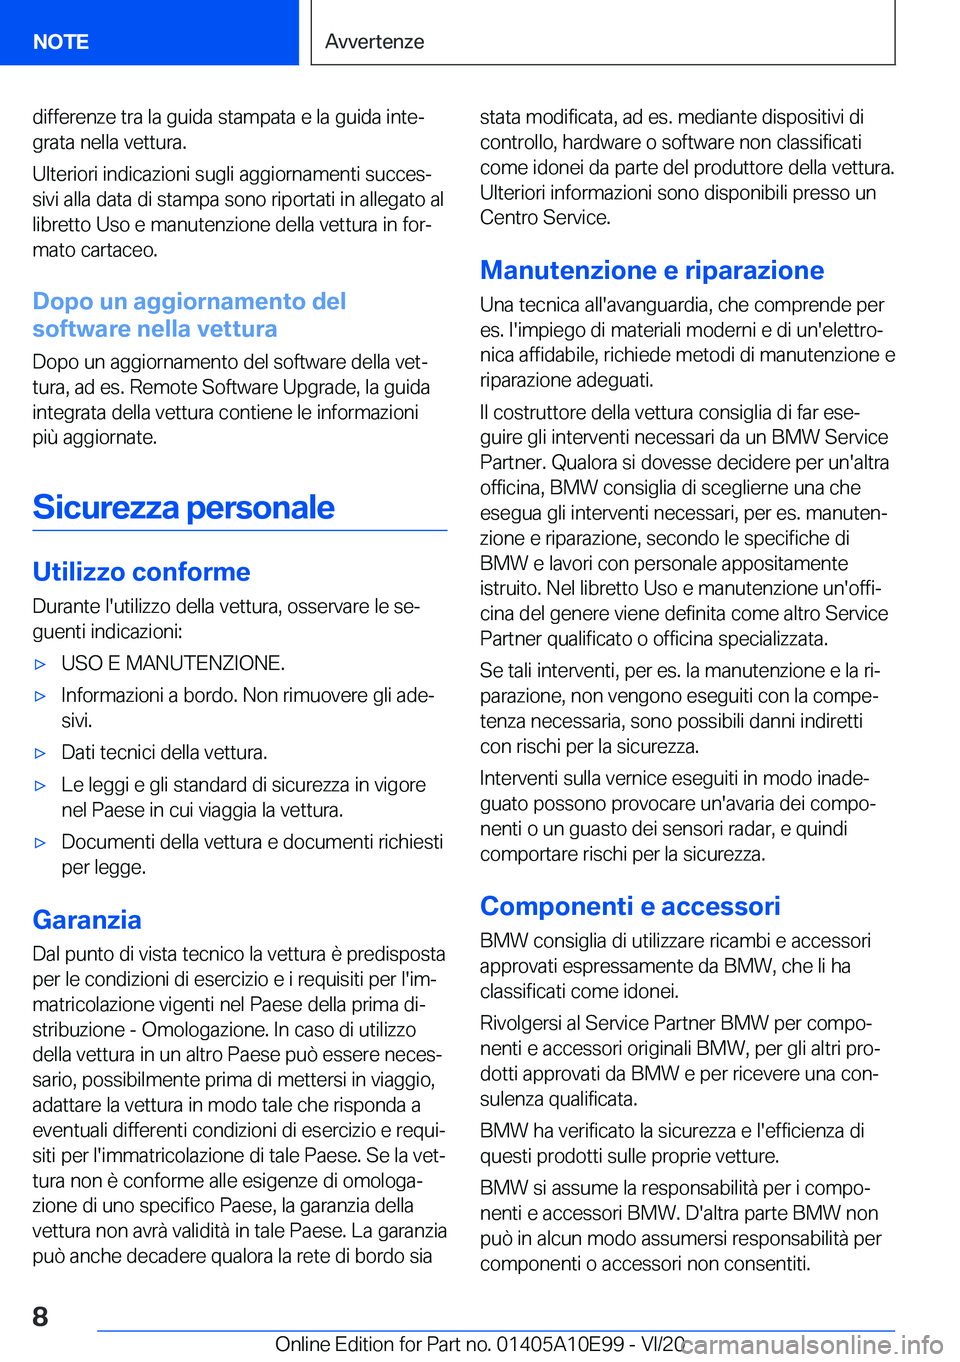 BMW X3 2021  Libretti Di Uso E manutenzione (in Italian) �d�i�f�f�e�r�e�n�z�e��t�r�a��l�a��g�u�i�d�a��s�t�a�m�p�a�t�a��e��l�a��g�u�i�d�a��i�n�t�eª�g�r�a�t�a��n�e�l�l�a��v�e�t�t�u�r�a�.
�U�l�t�e�r�i�o�r�i��i�n�d�i�c�a�z�i�o�n�i��s�u�g�l�i��a�g